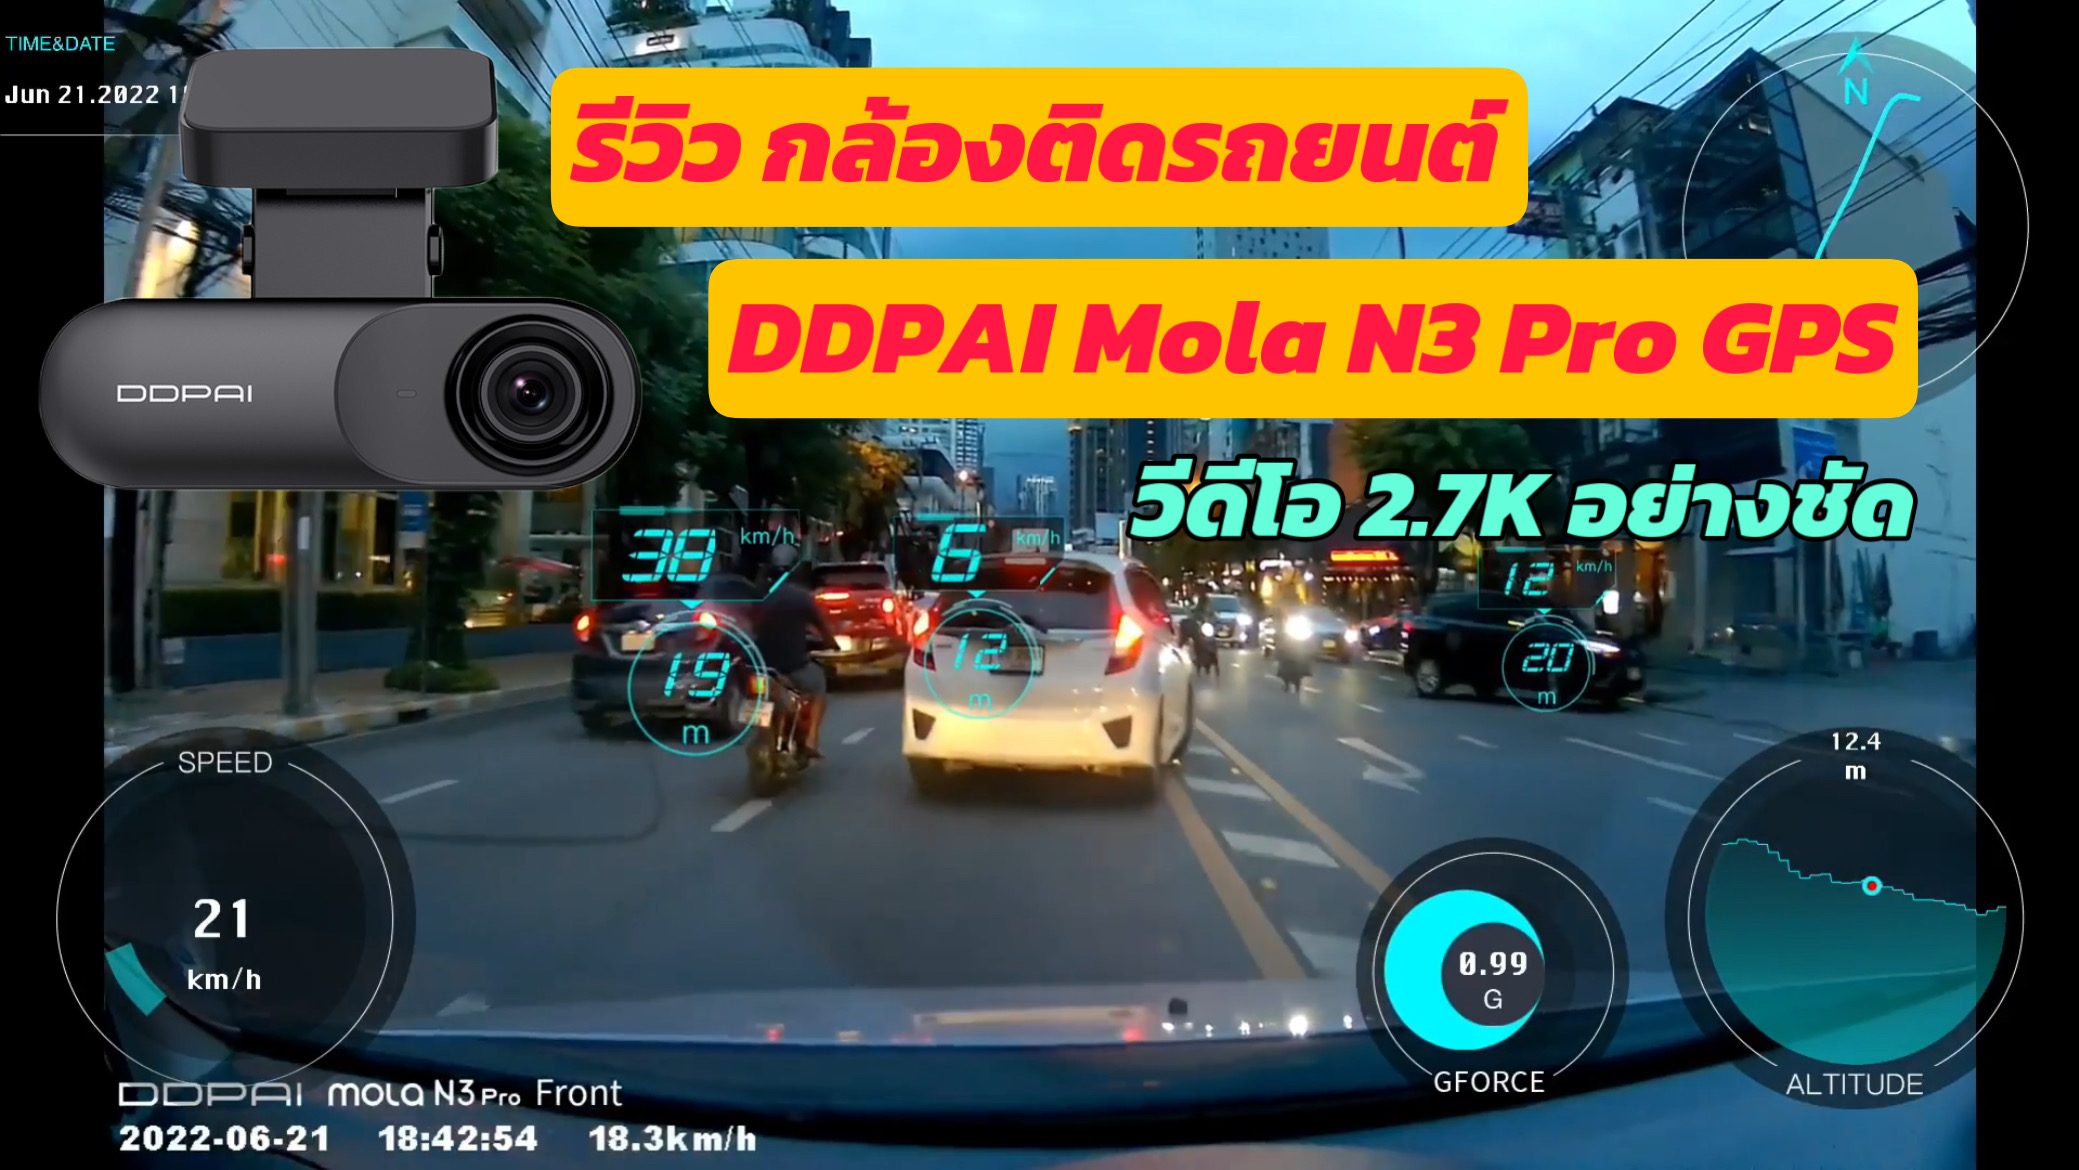 Ddpai Mola N3 Pro Gps กล้องติดรถยนต์ความคมชัด 2K โคตรชัด - Pantip